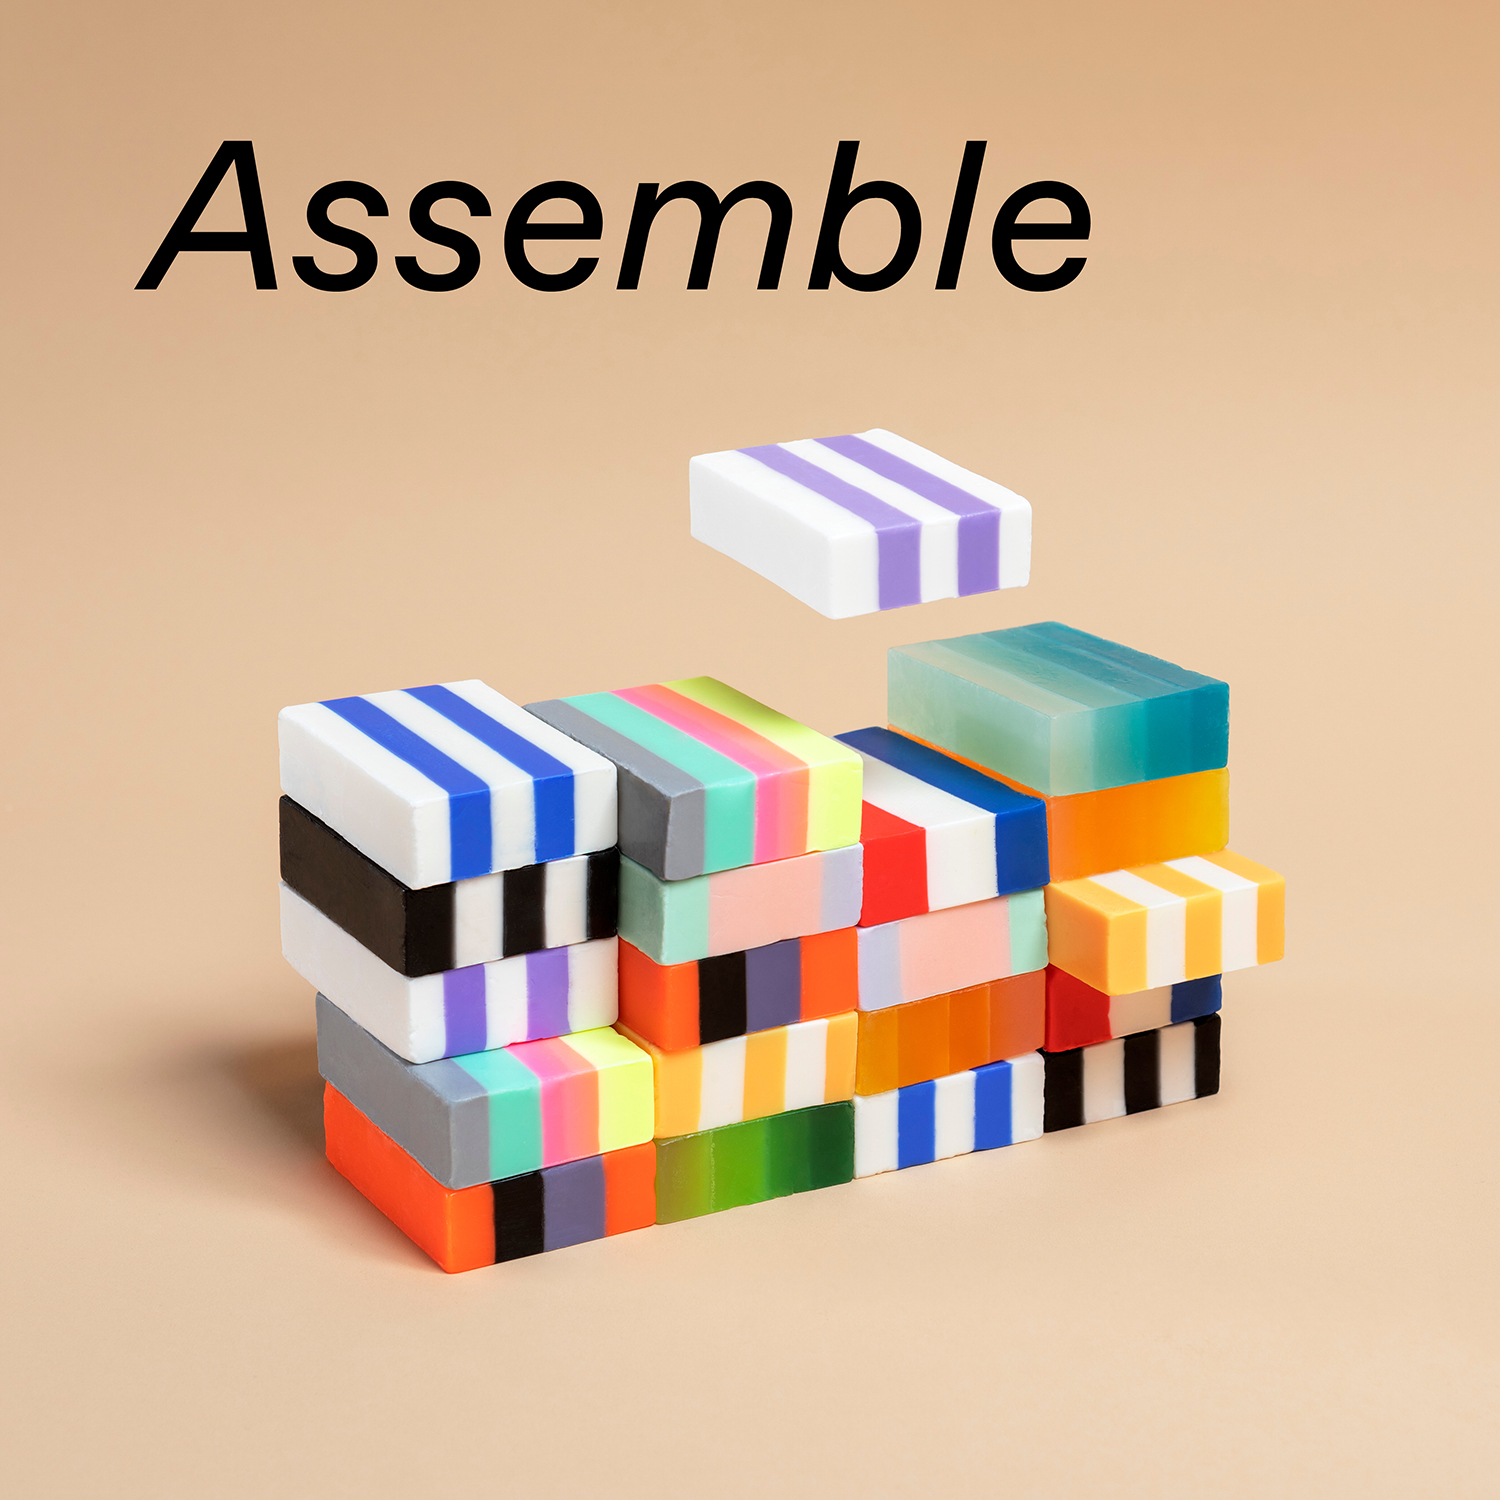 Ein Stapel mehrfarbiger Bausteine steht für das Zusammenführen (englisch: Assemble) bei Euresearch 